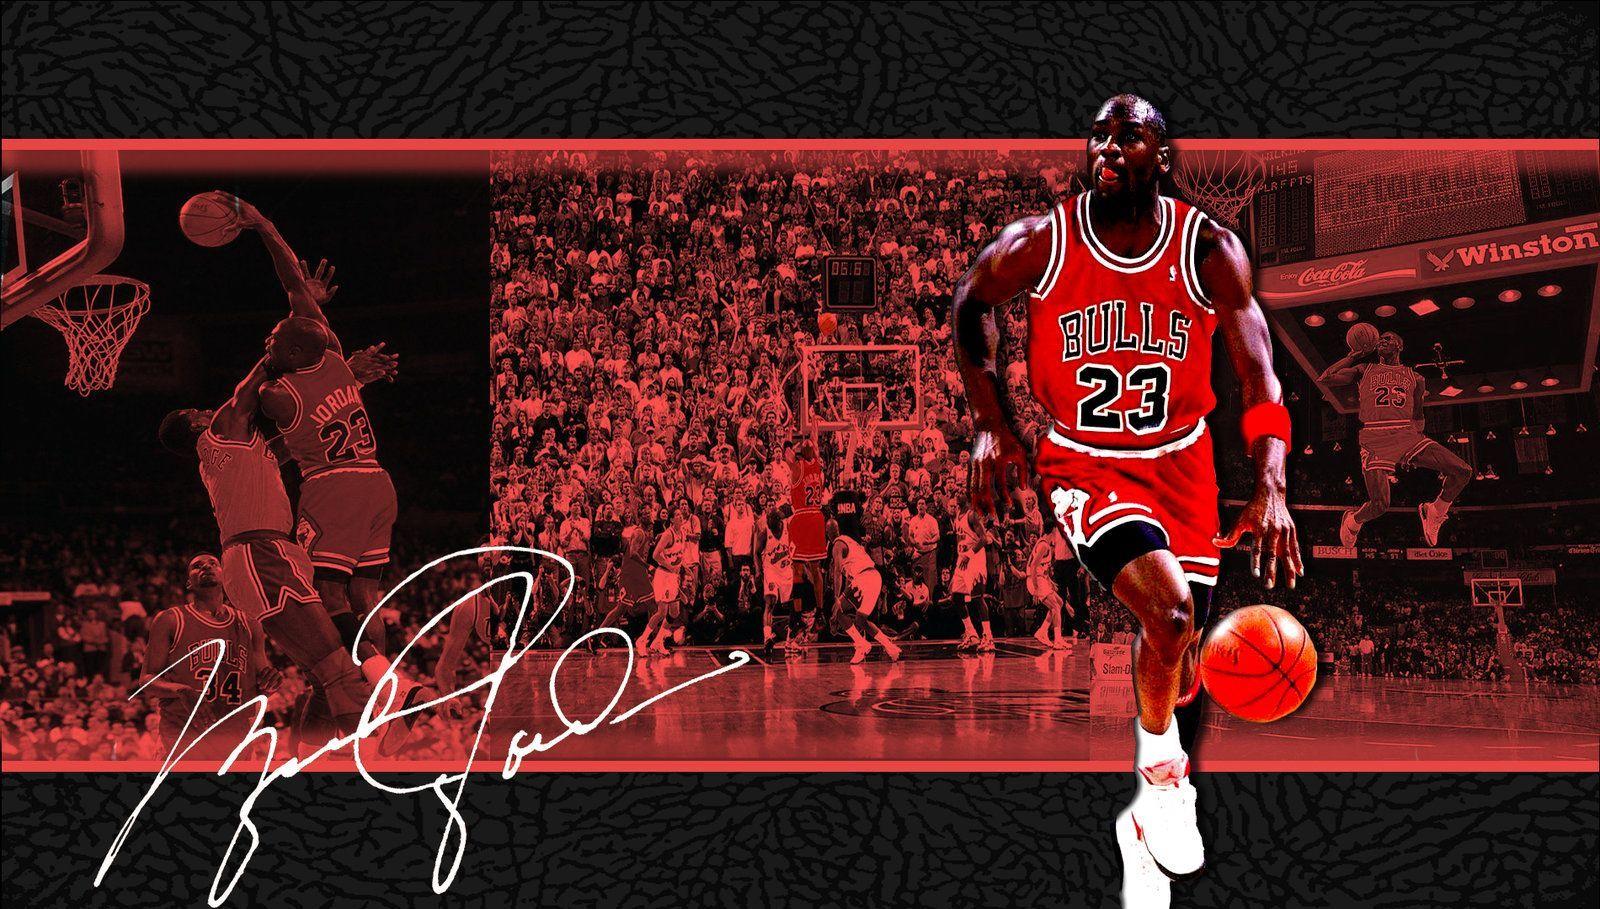 Michael Jordan Basketball Cool Wallpaper Free wallpaper download